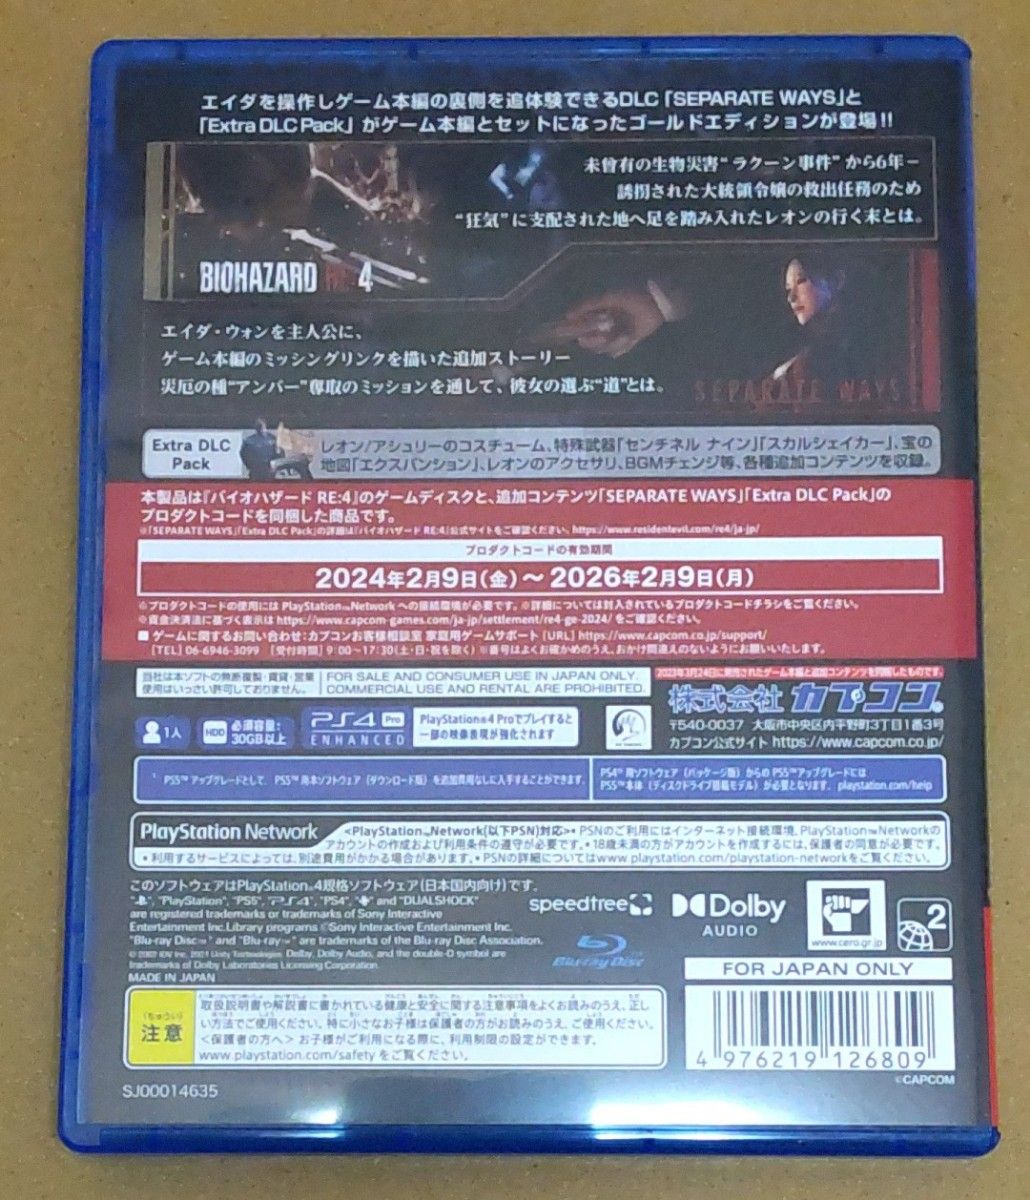 【PS4】 BIOHAZARD RE:4 ゴールドエディション